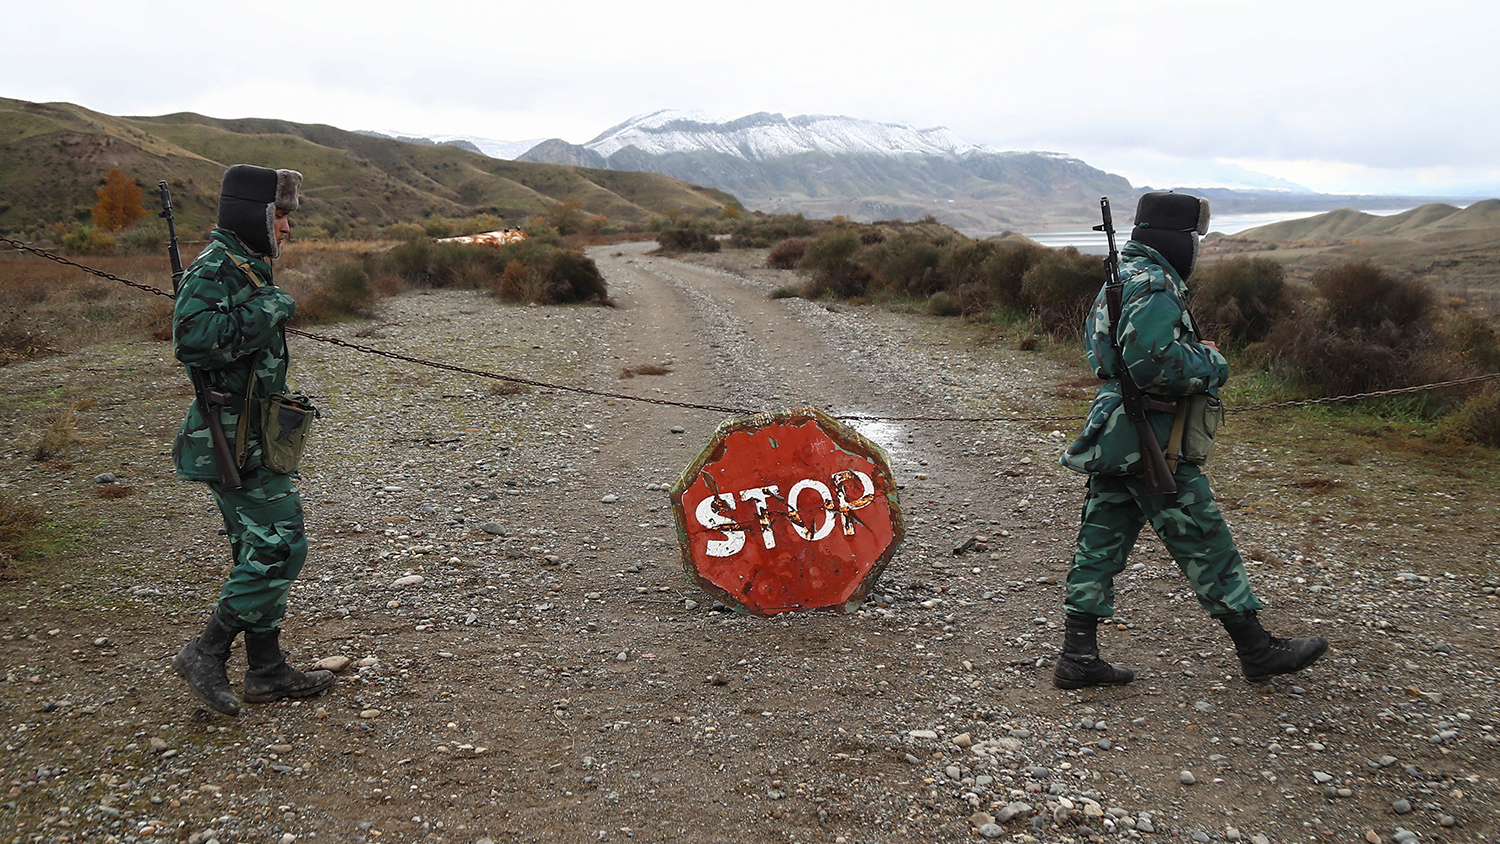 МО Азербайджан съобщаваи за обстрел на позициите им по границата с Армения, МО Армения опроверга